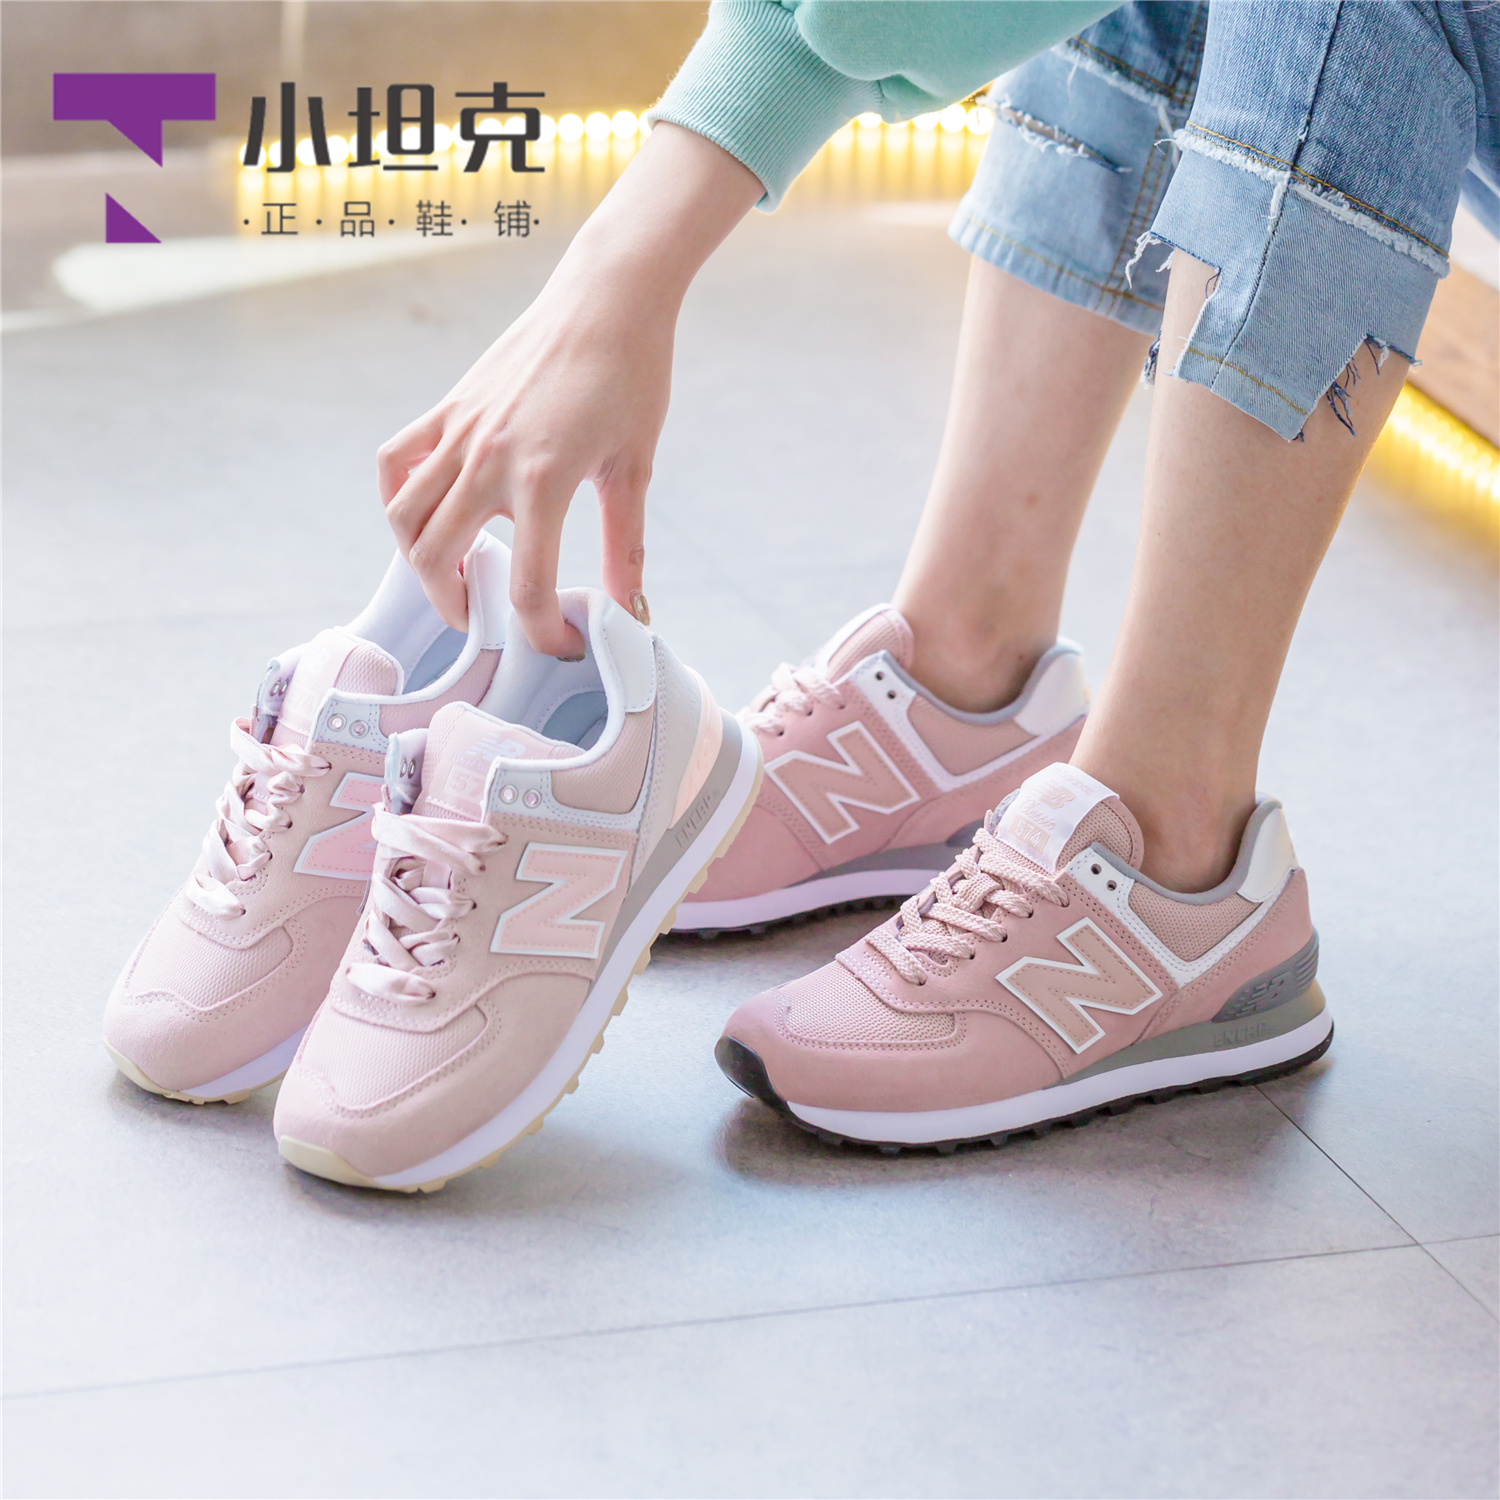 New Balance/NB Women's Shoe Girl Sakura Pink Retro Casual Sneakers Running Shoe WL574TAC/UNC